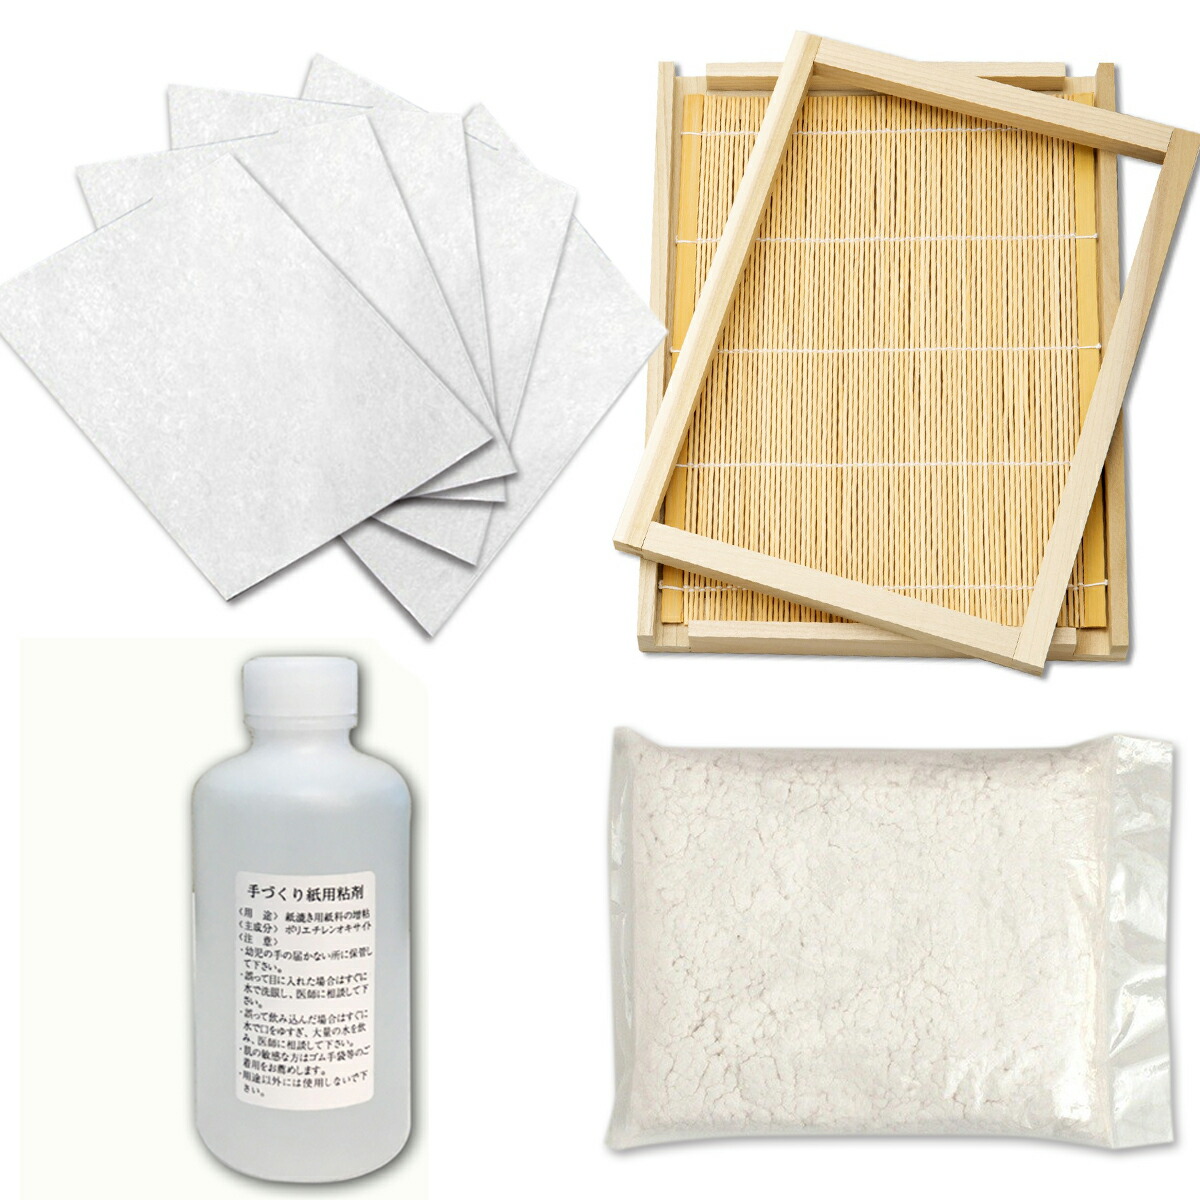  紙作り 材料セット バージンパルプ ・ 再生パルプ ・ 粘剤 ・ 紙すき 木枠 すだれ付 B5判 